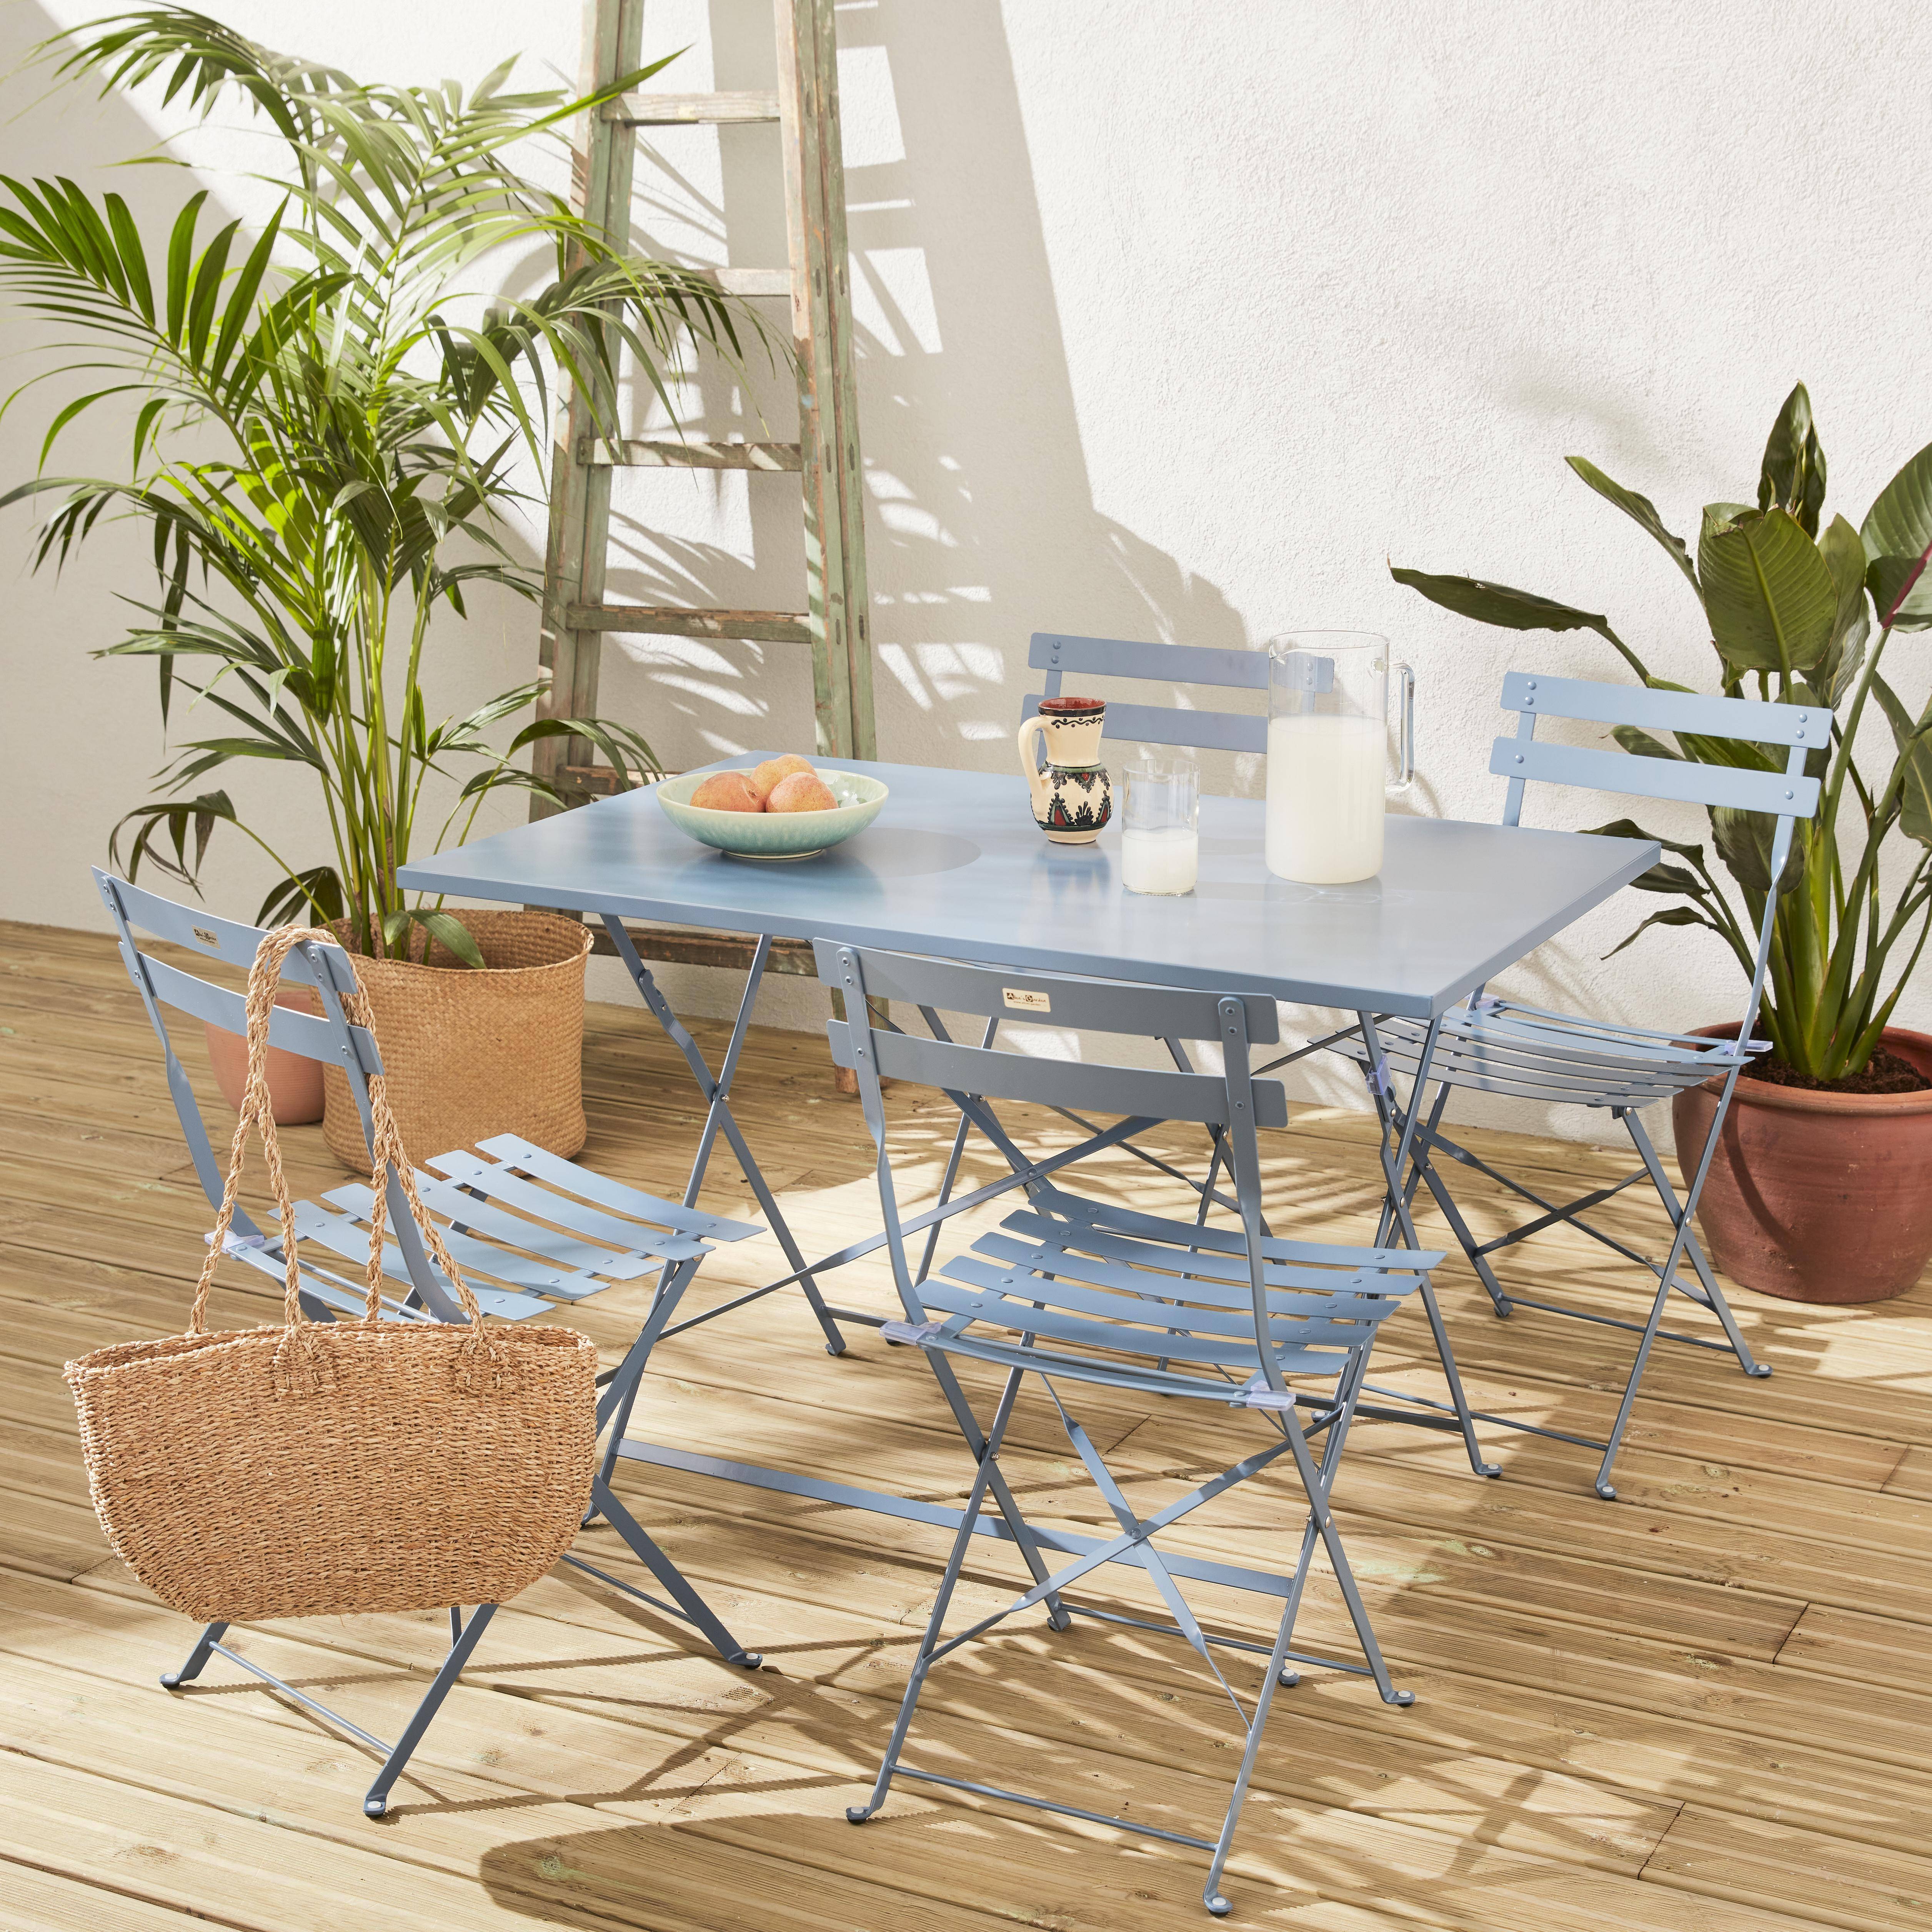 Salotto da giardino, bistrot, pieghevole - modello: Emilia, rettangolare, colore: Blu ombreggiato - Tavolo, dimensioni: 110x70cm, con quattro sedie pieghevoli, acciaio termolaccato,sweeek,Photo1